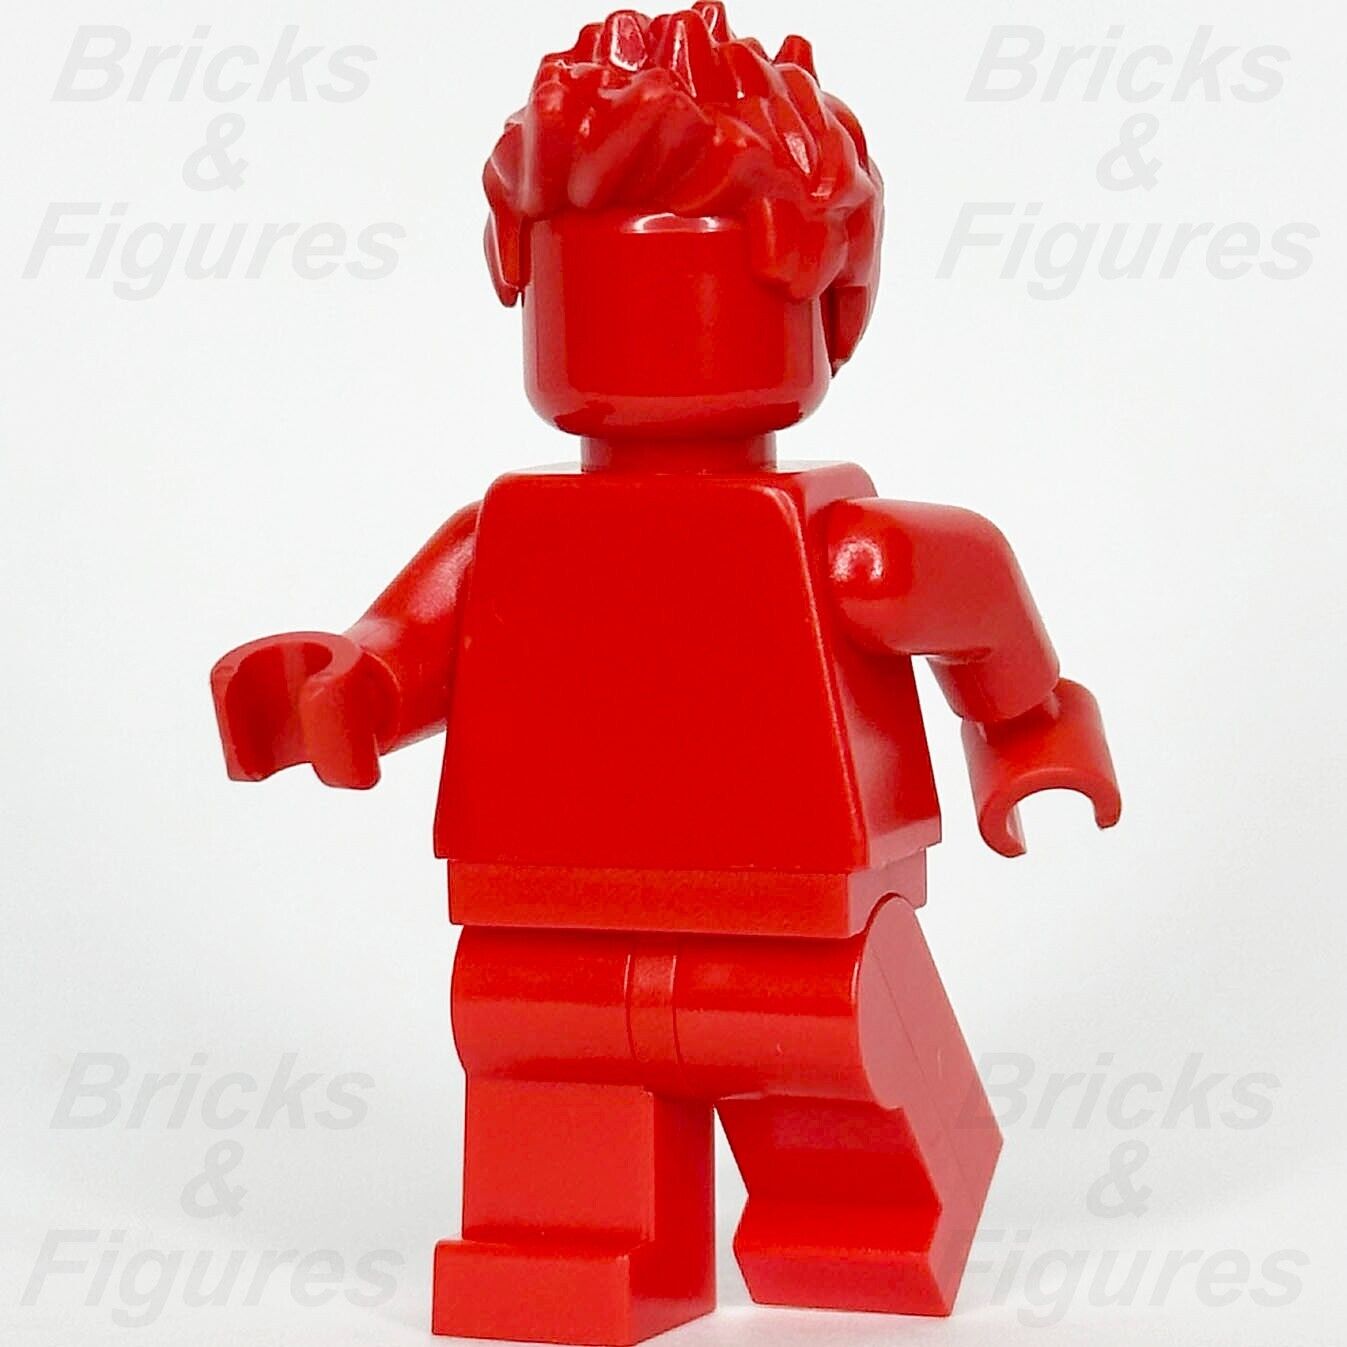 レゴ みんなすごい 赤茶色 ミニフィギュア モノクロ 40516 tls101